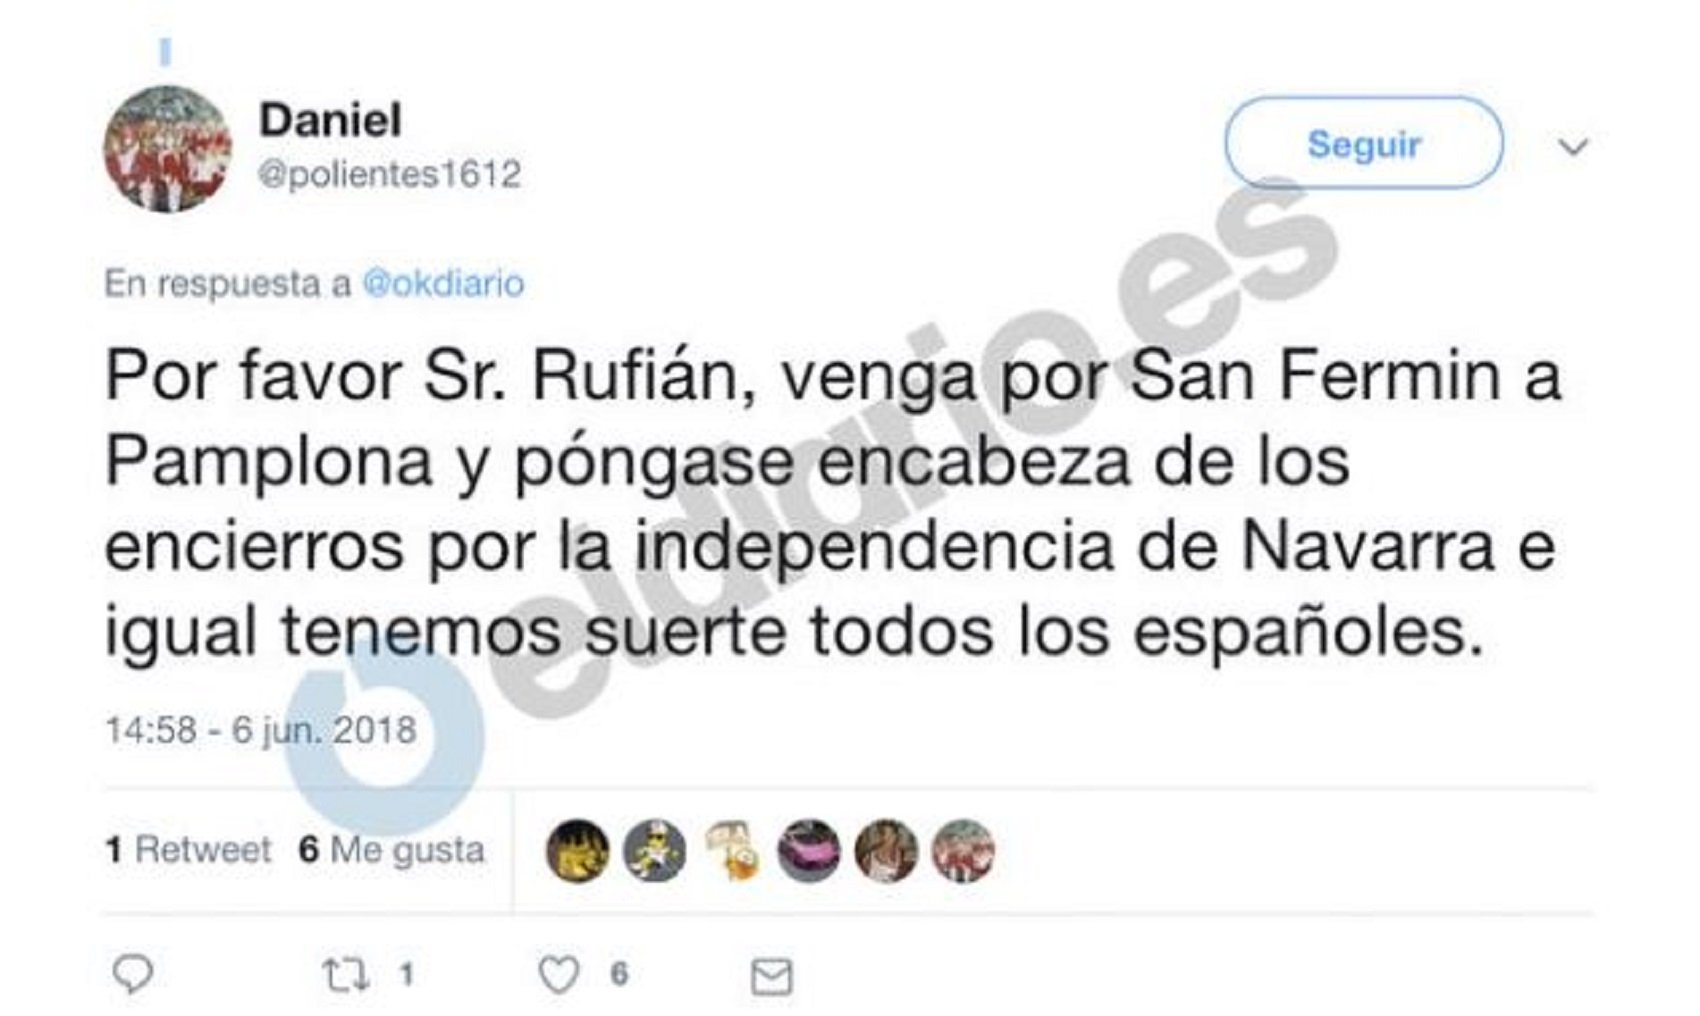 El jefe de la Polícia Nacional de Navarra insulta a independentistas en Twitter